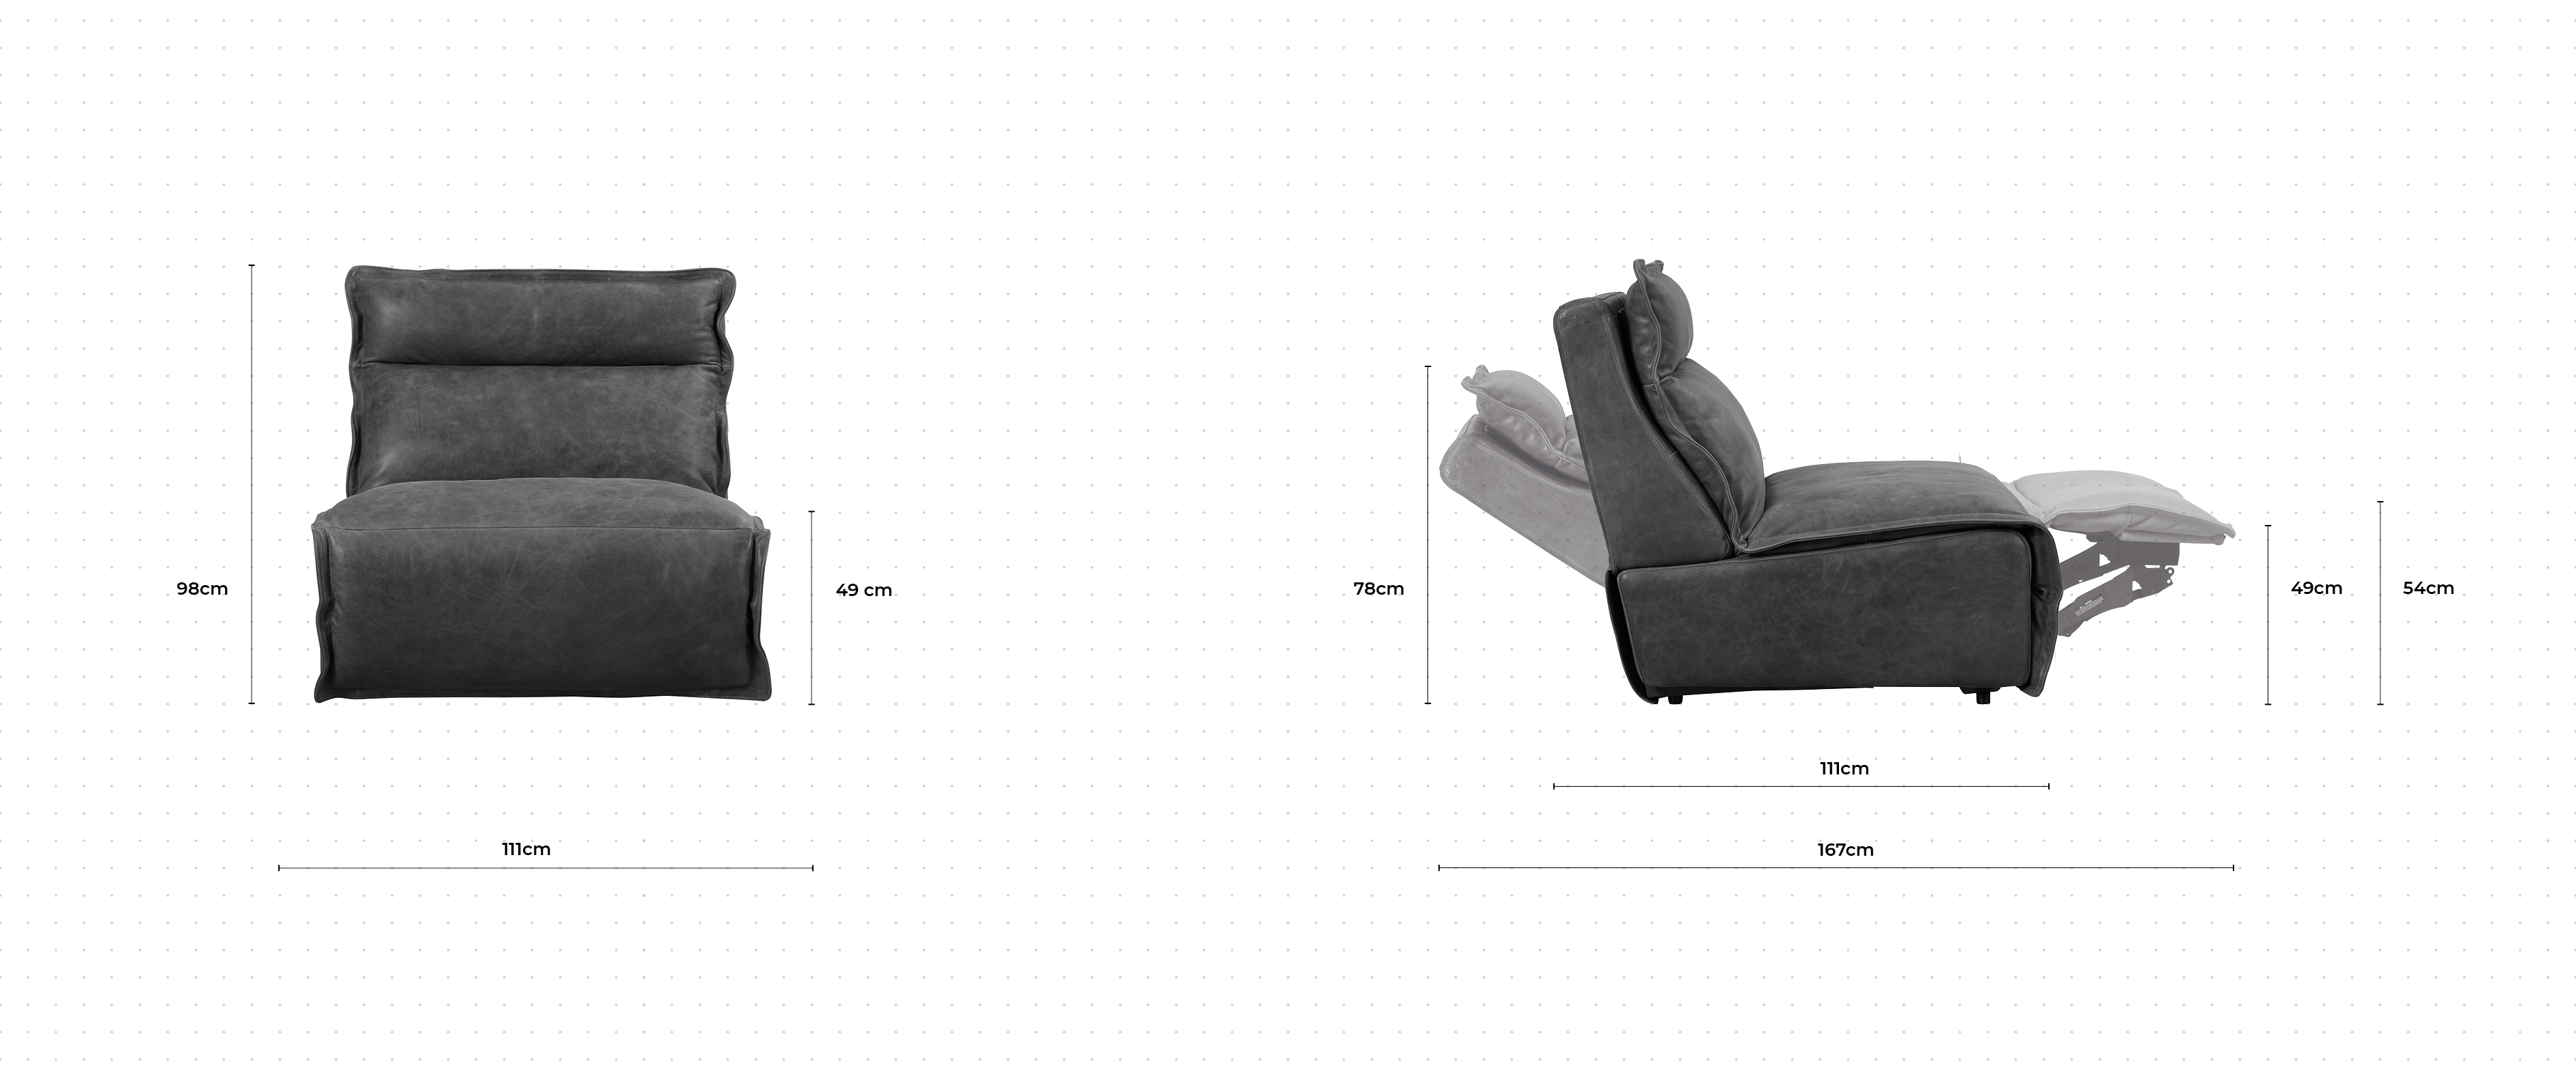 Heston Chair dimensions